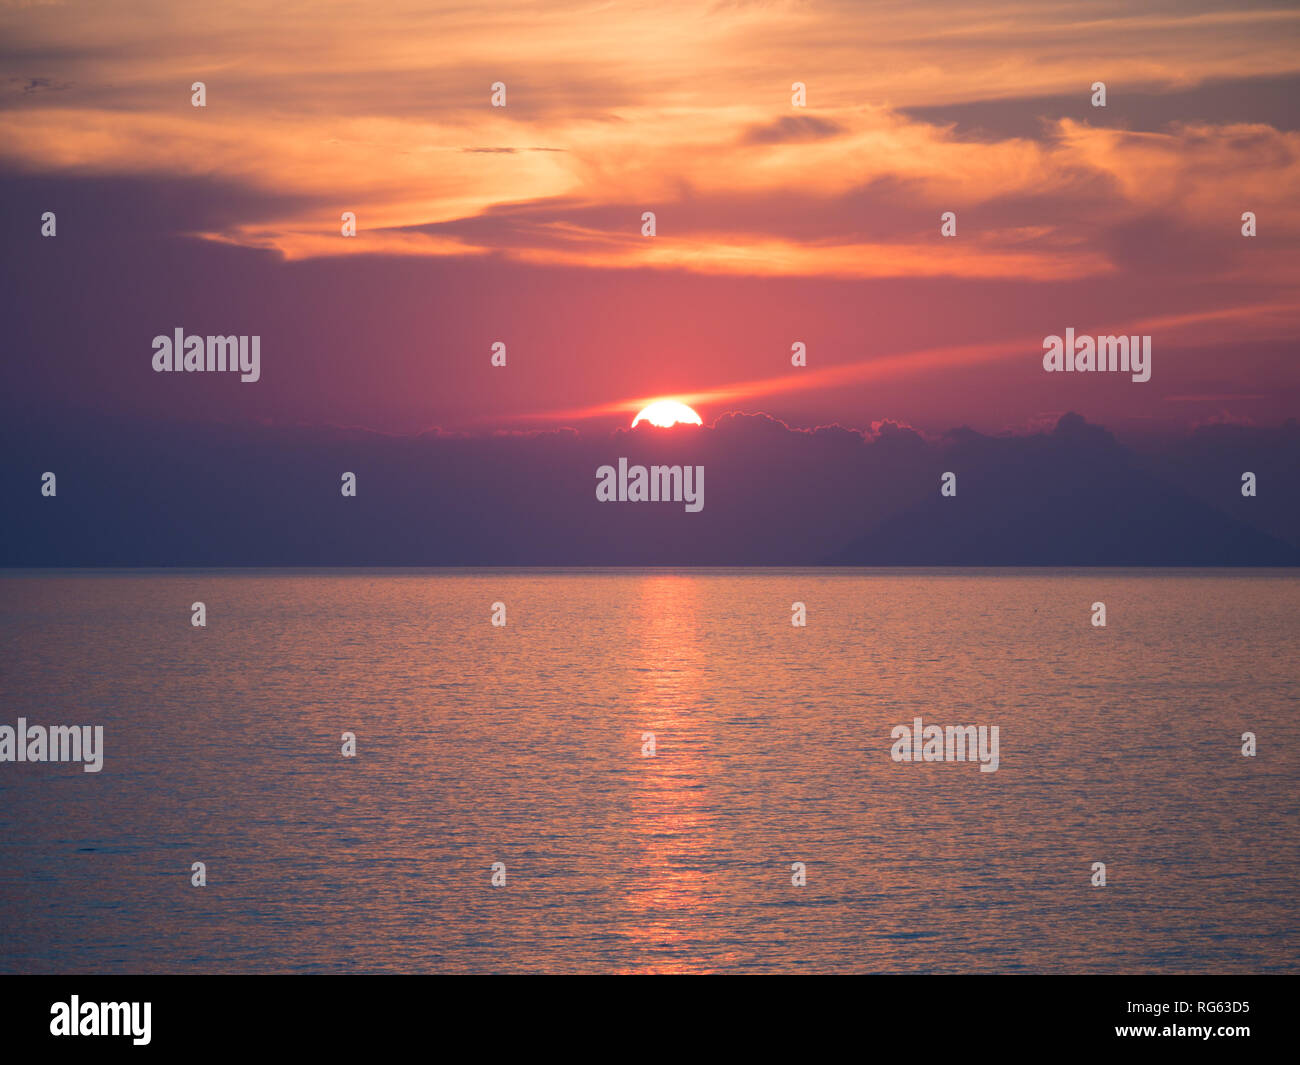 Wonderful sunset on the sea. Italian landscape. Stock Photo